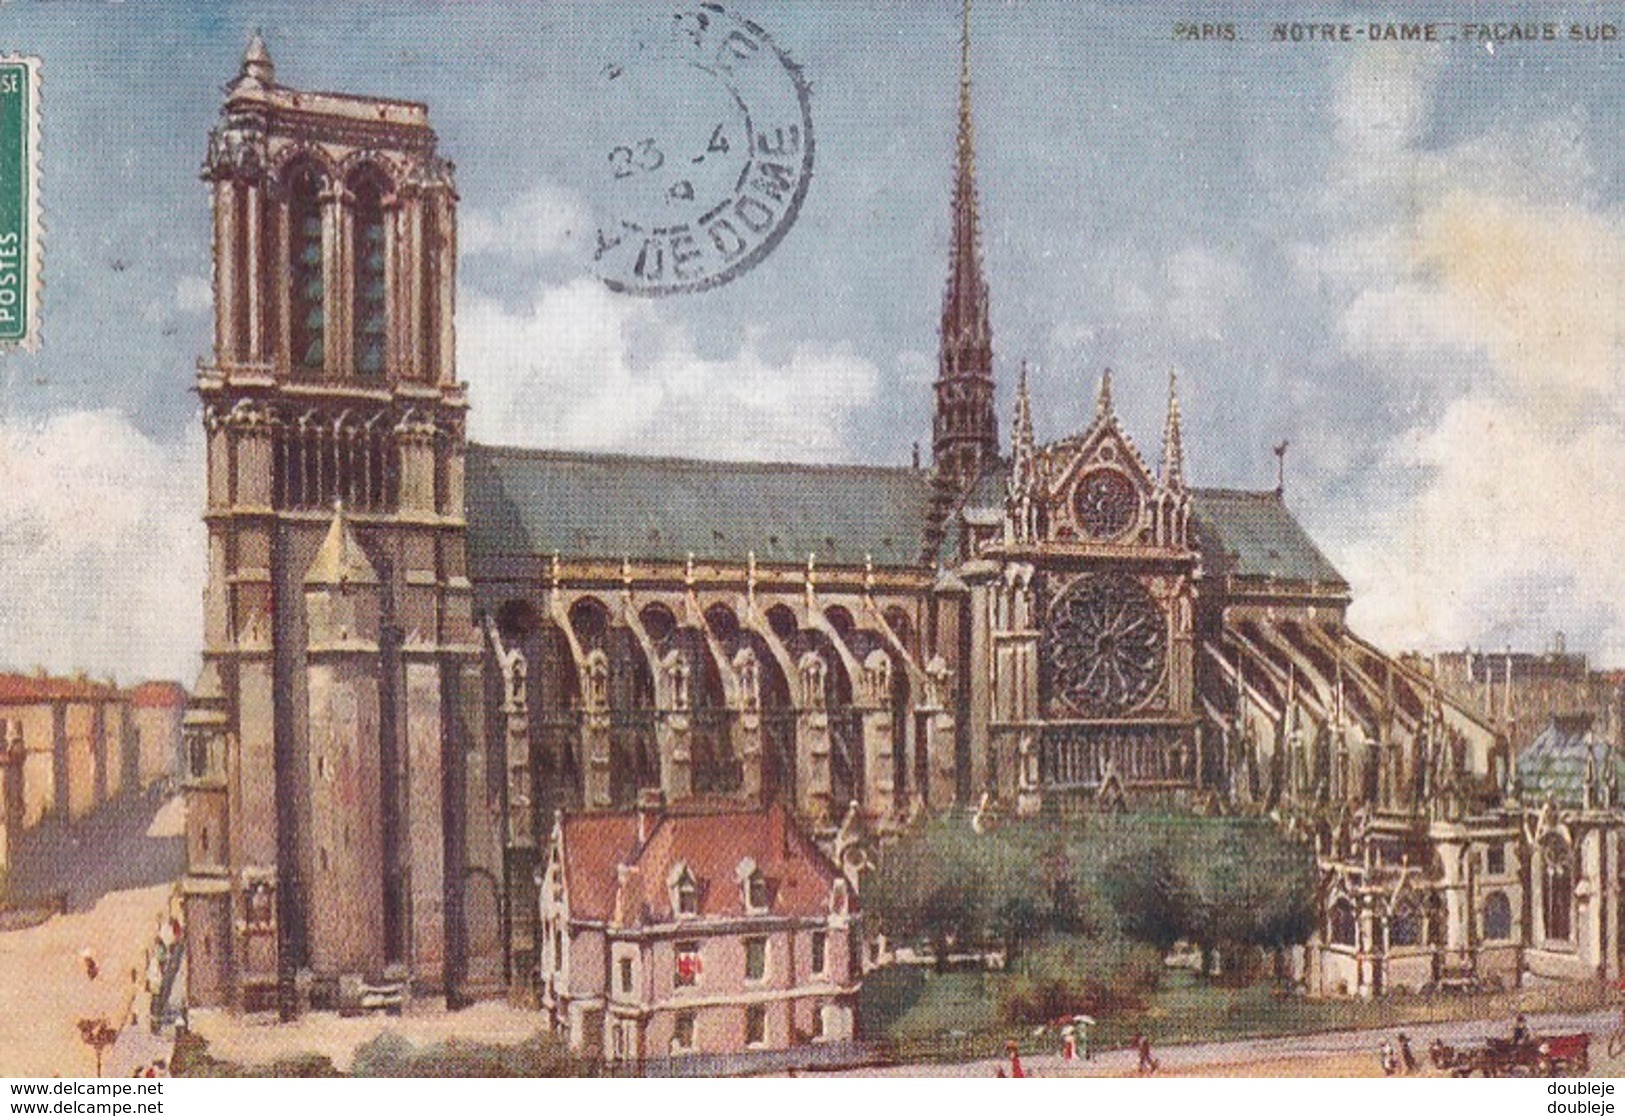 OILETTE  PARIS V  Série 945 P  N°35  ........... Notre Dame Façade Sud  ....... Un Mot à La Poste - Tuck, Raphael